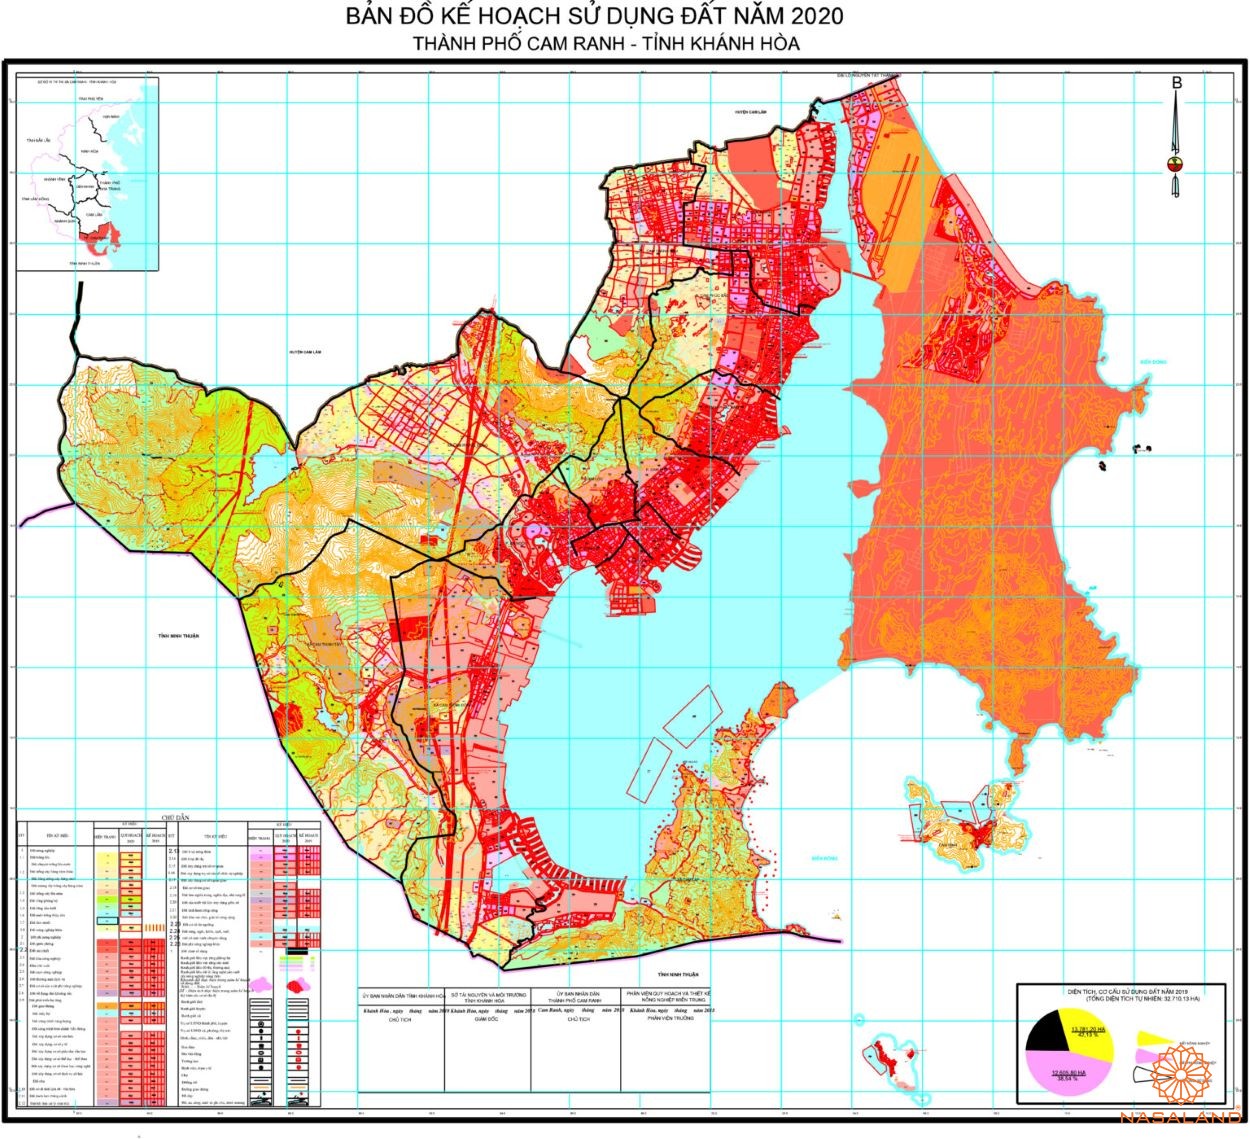 Bản đồ kế hoạch sử dụng đất Thành phố Cam Ranh, Tỉnh Khánh Hòa năm 2020